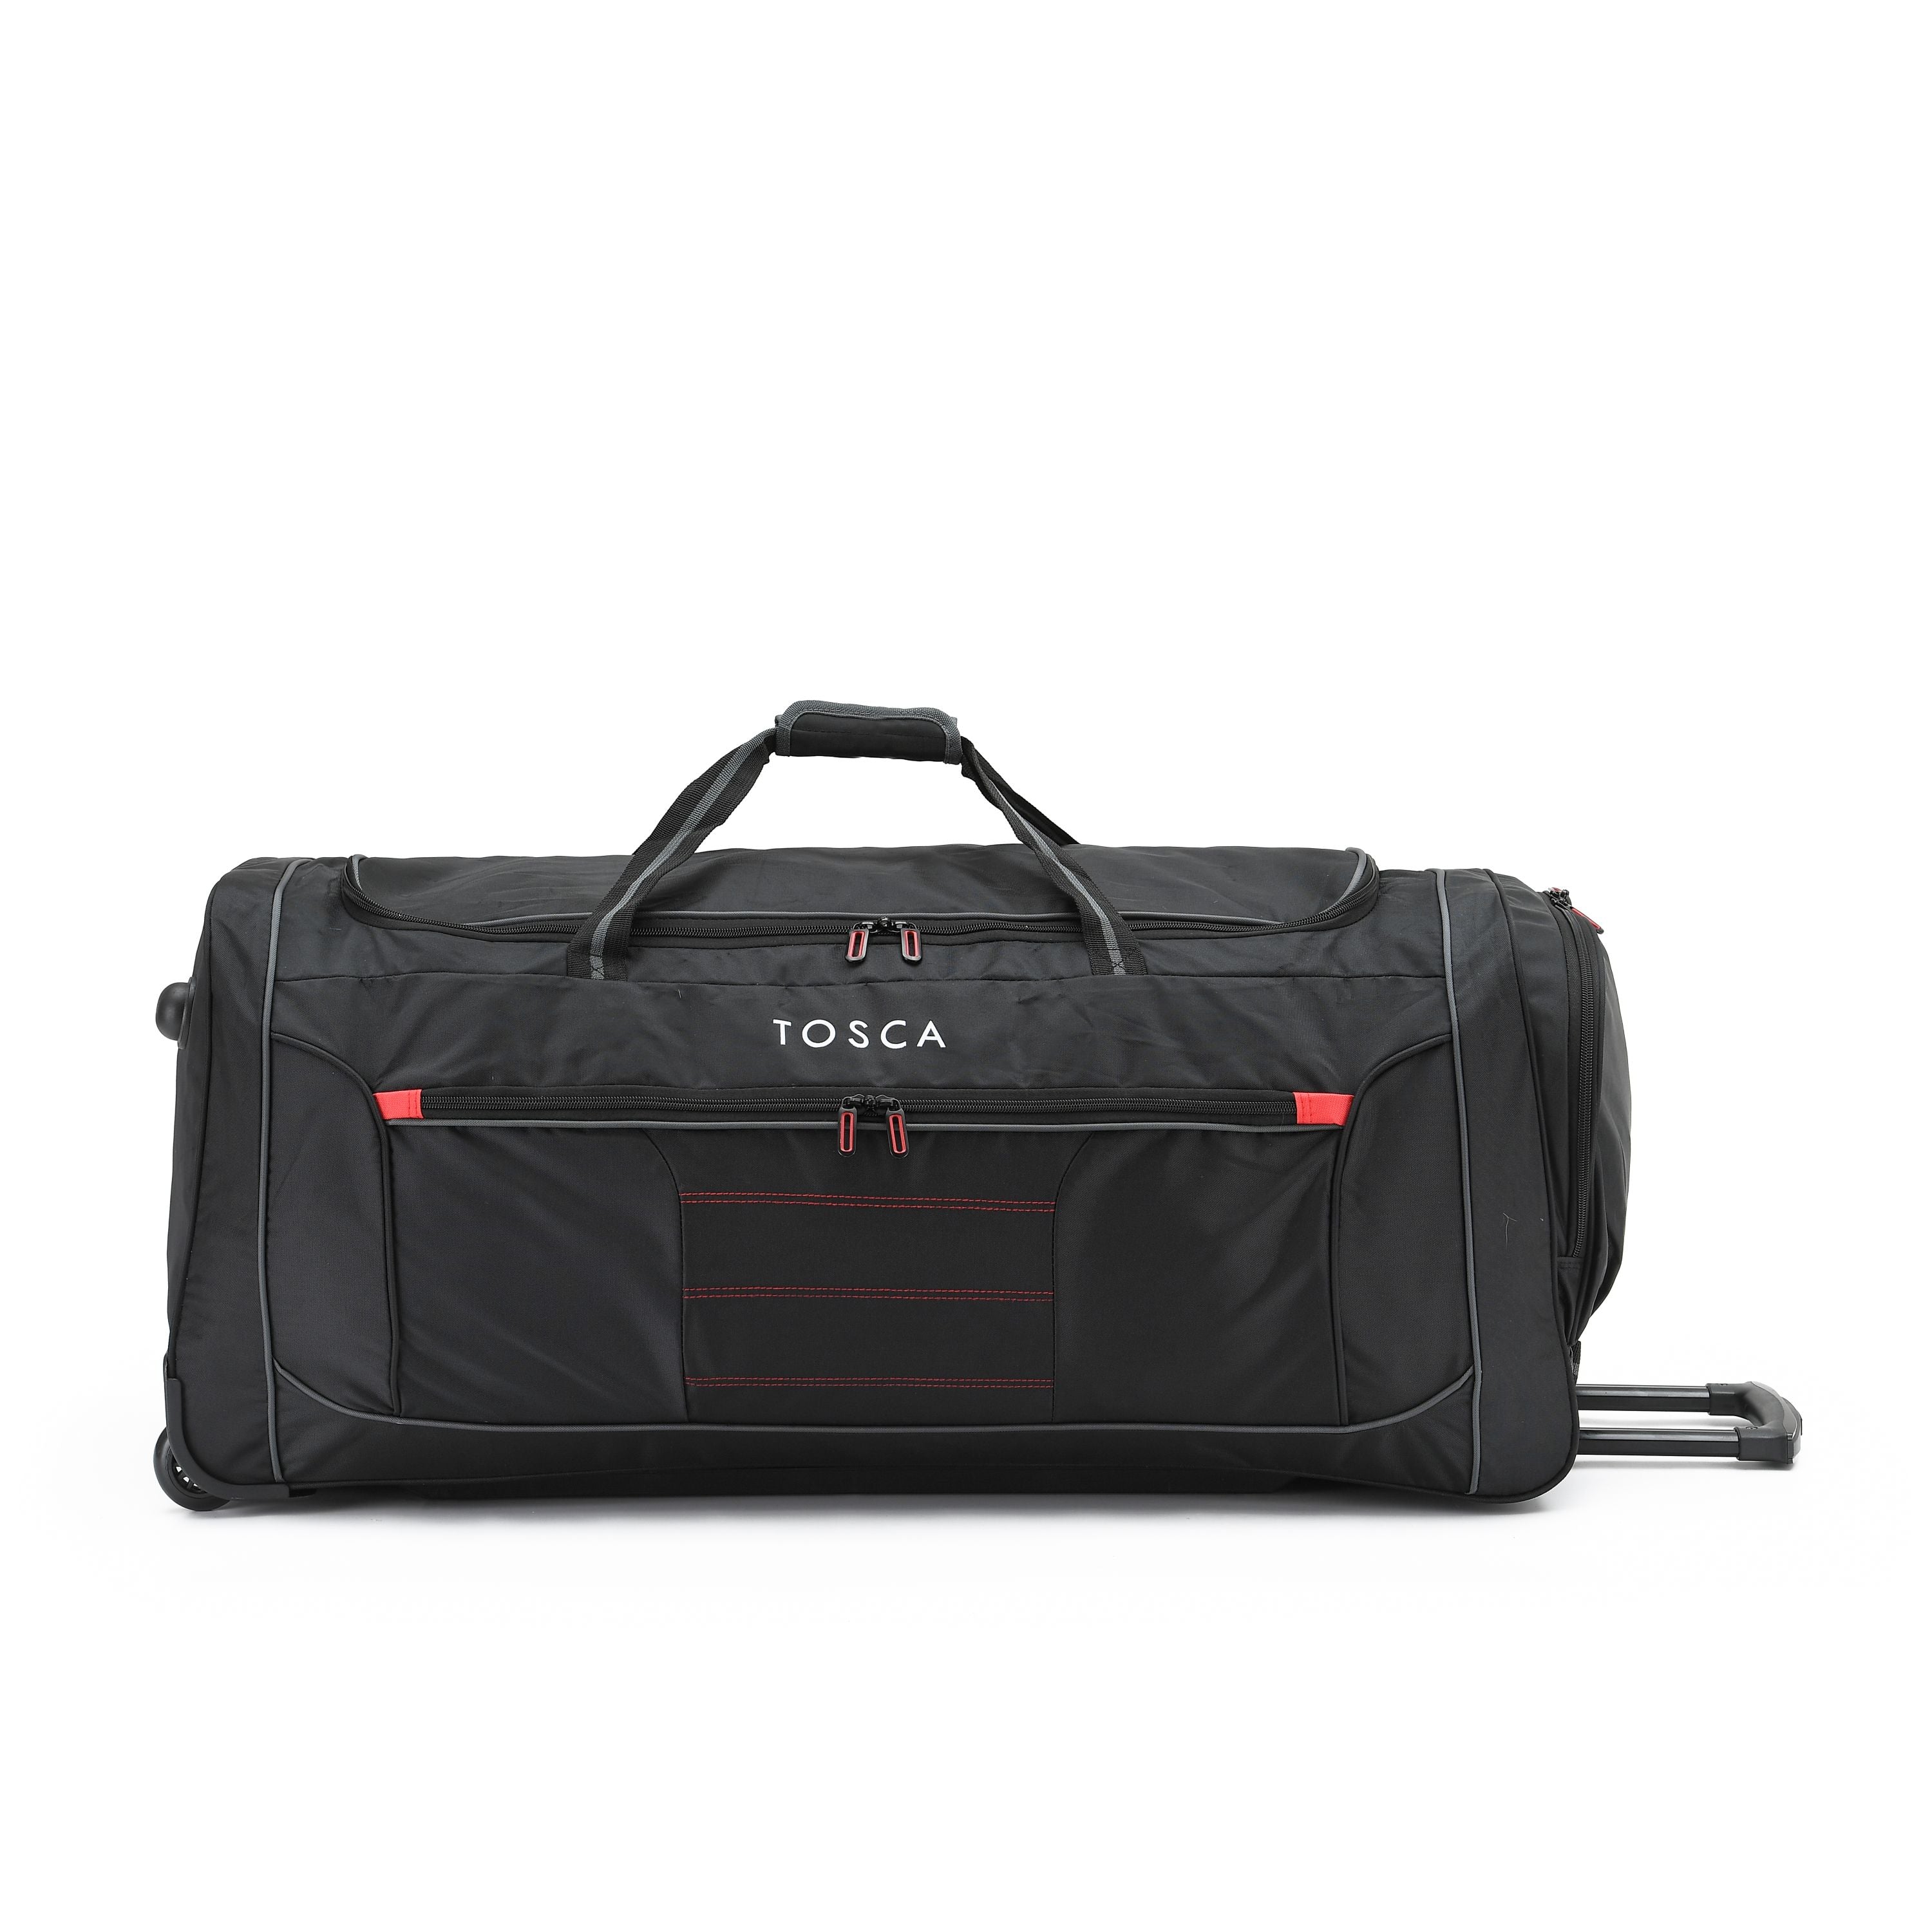 Tosca - TCA794 90cm Jumbo Wheeled Duffle Bag - Black/Red-1